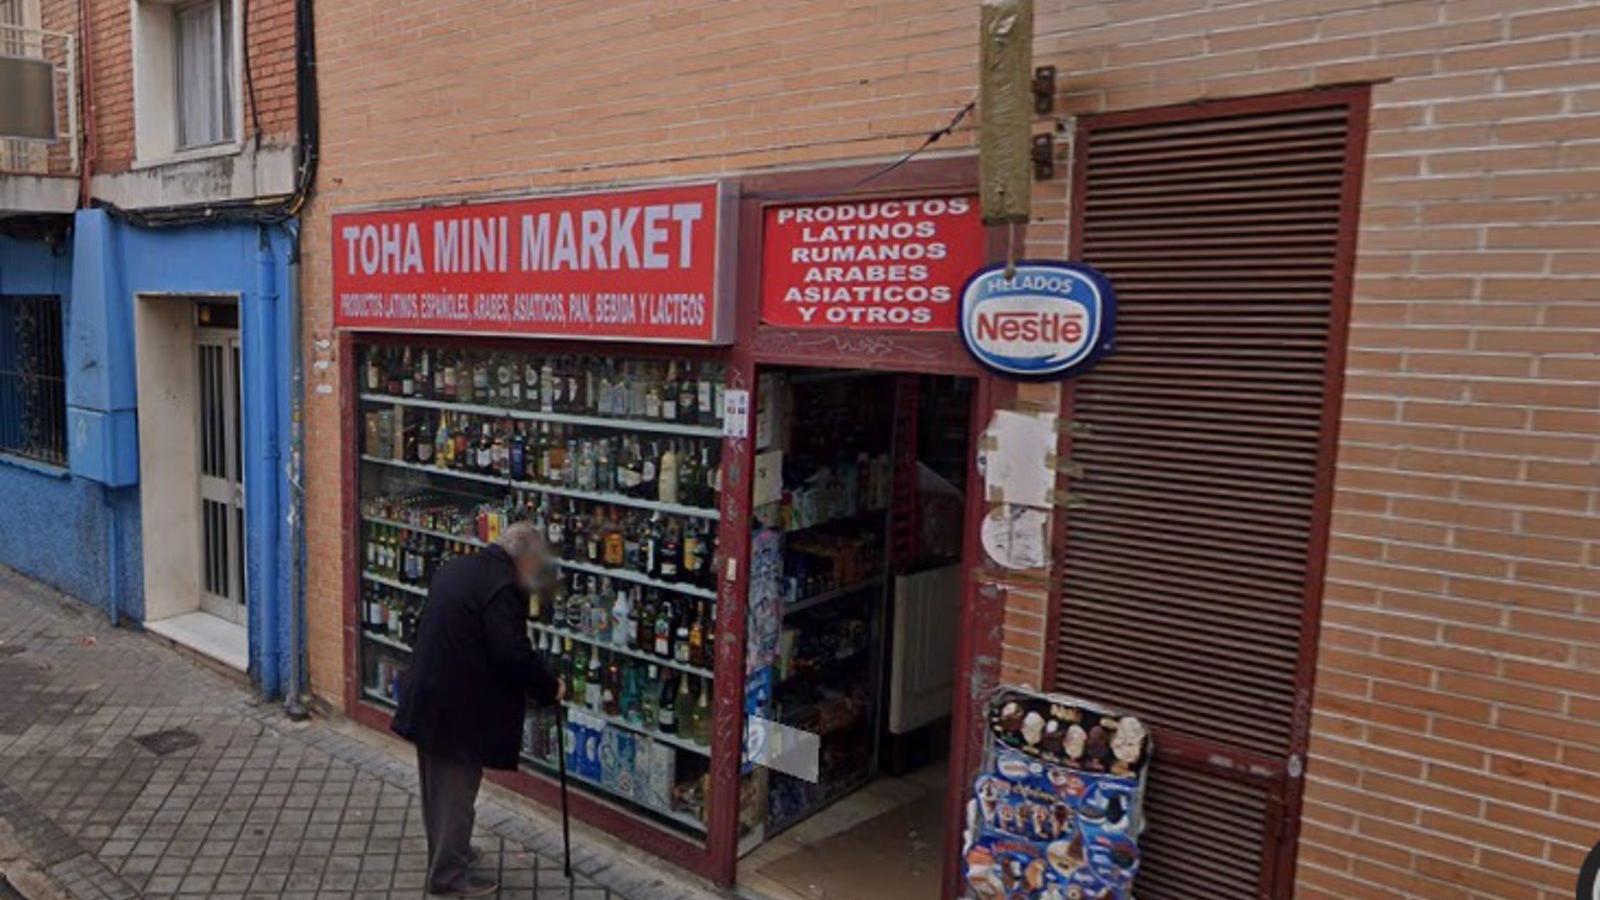 Inmovilizan 300 productos alimenticios caducados y mal etiquetados en una tienda de Fuencarral